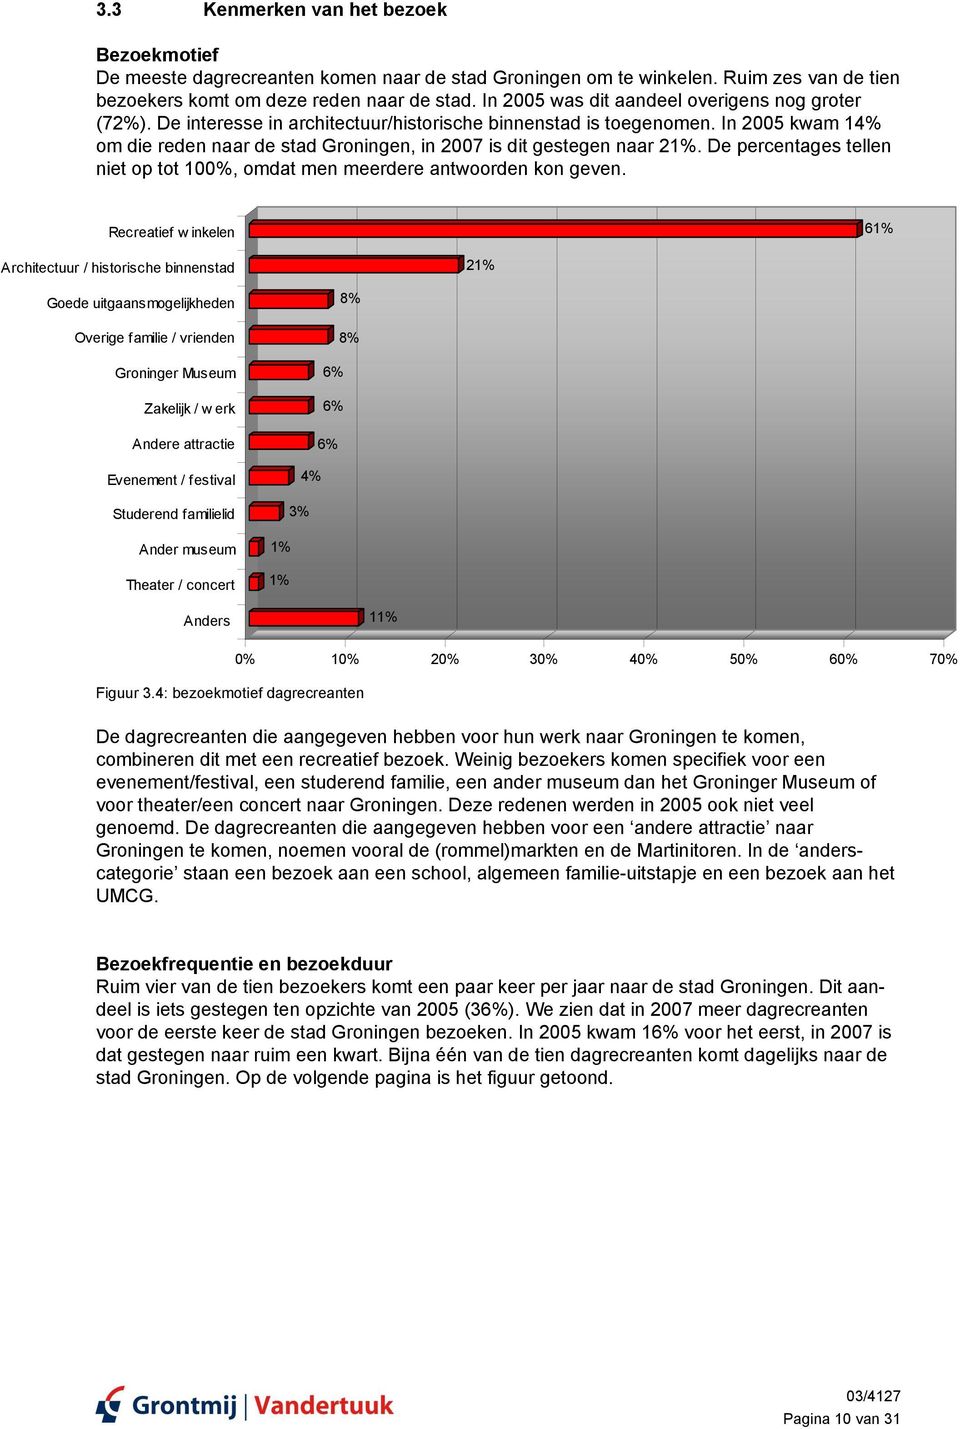 In 2005 kwam 14% om die reden naar de stad Groningen, in 2007 is dit gestegen naar 21%. De percentages tellen niet op tot 100%, omdat men meerdere antwoorden kon geven.